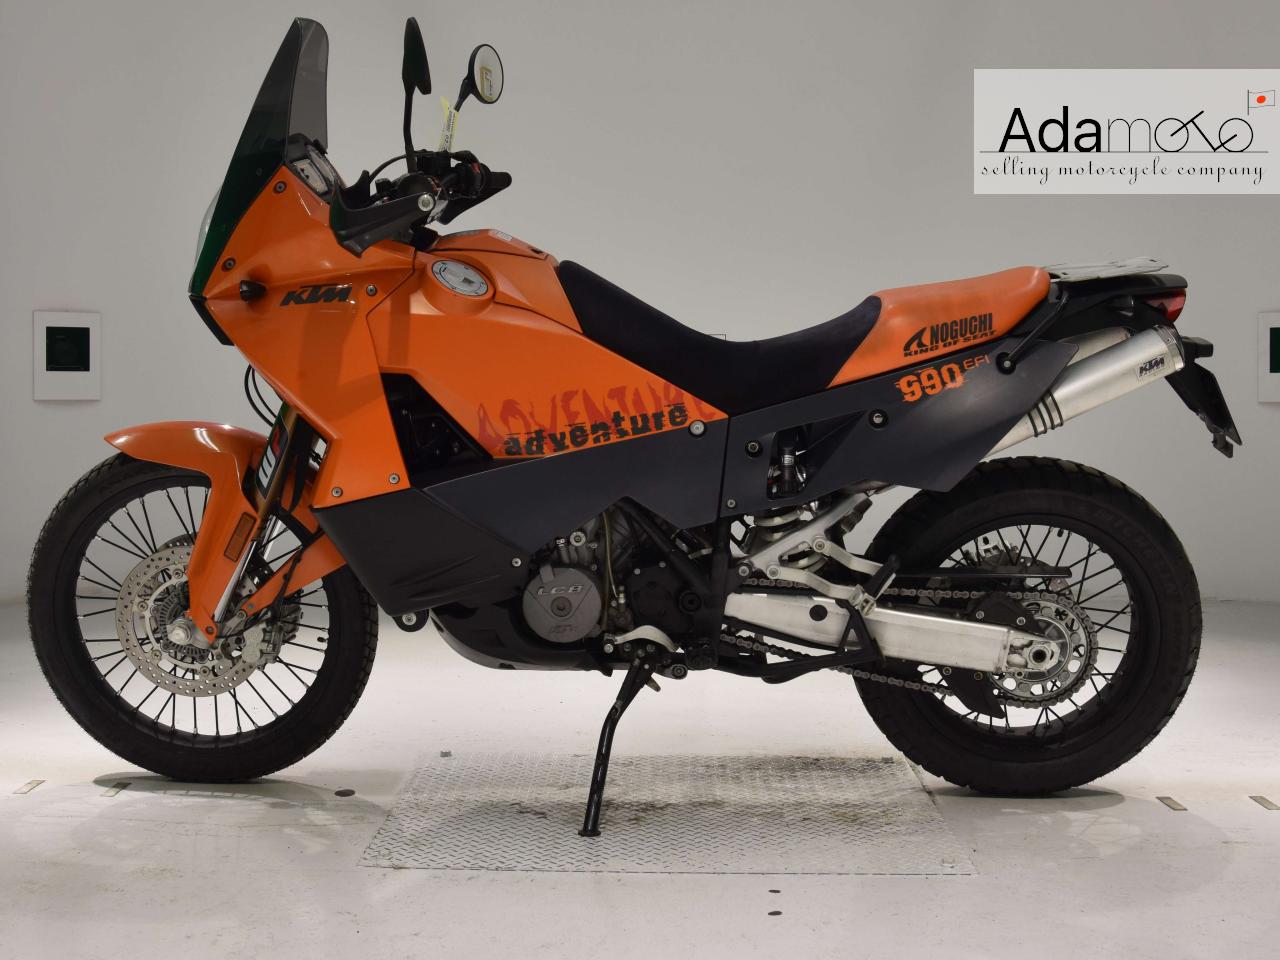 KTM 990 ADVENTURE - Adamoto - Motorcycles from Japan